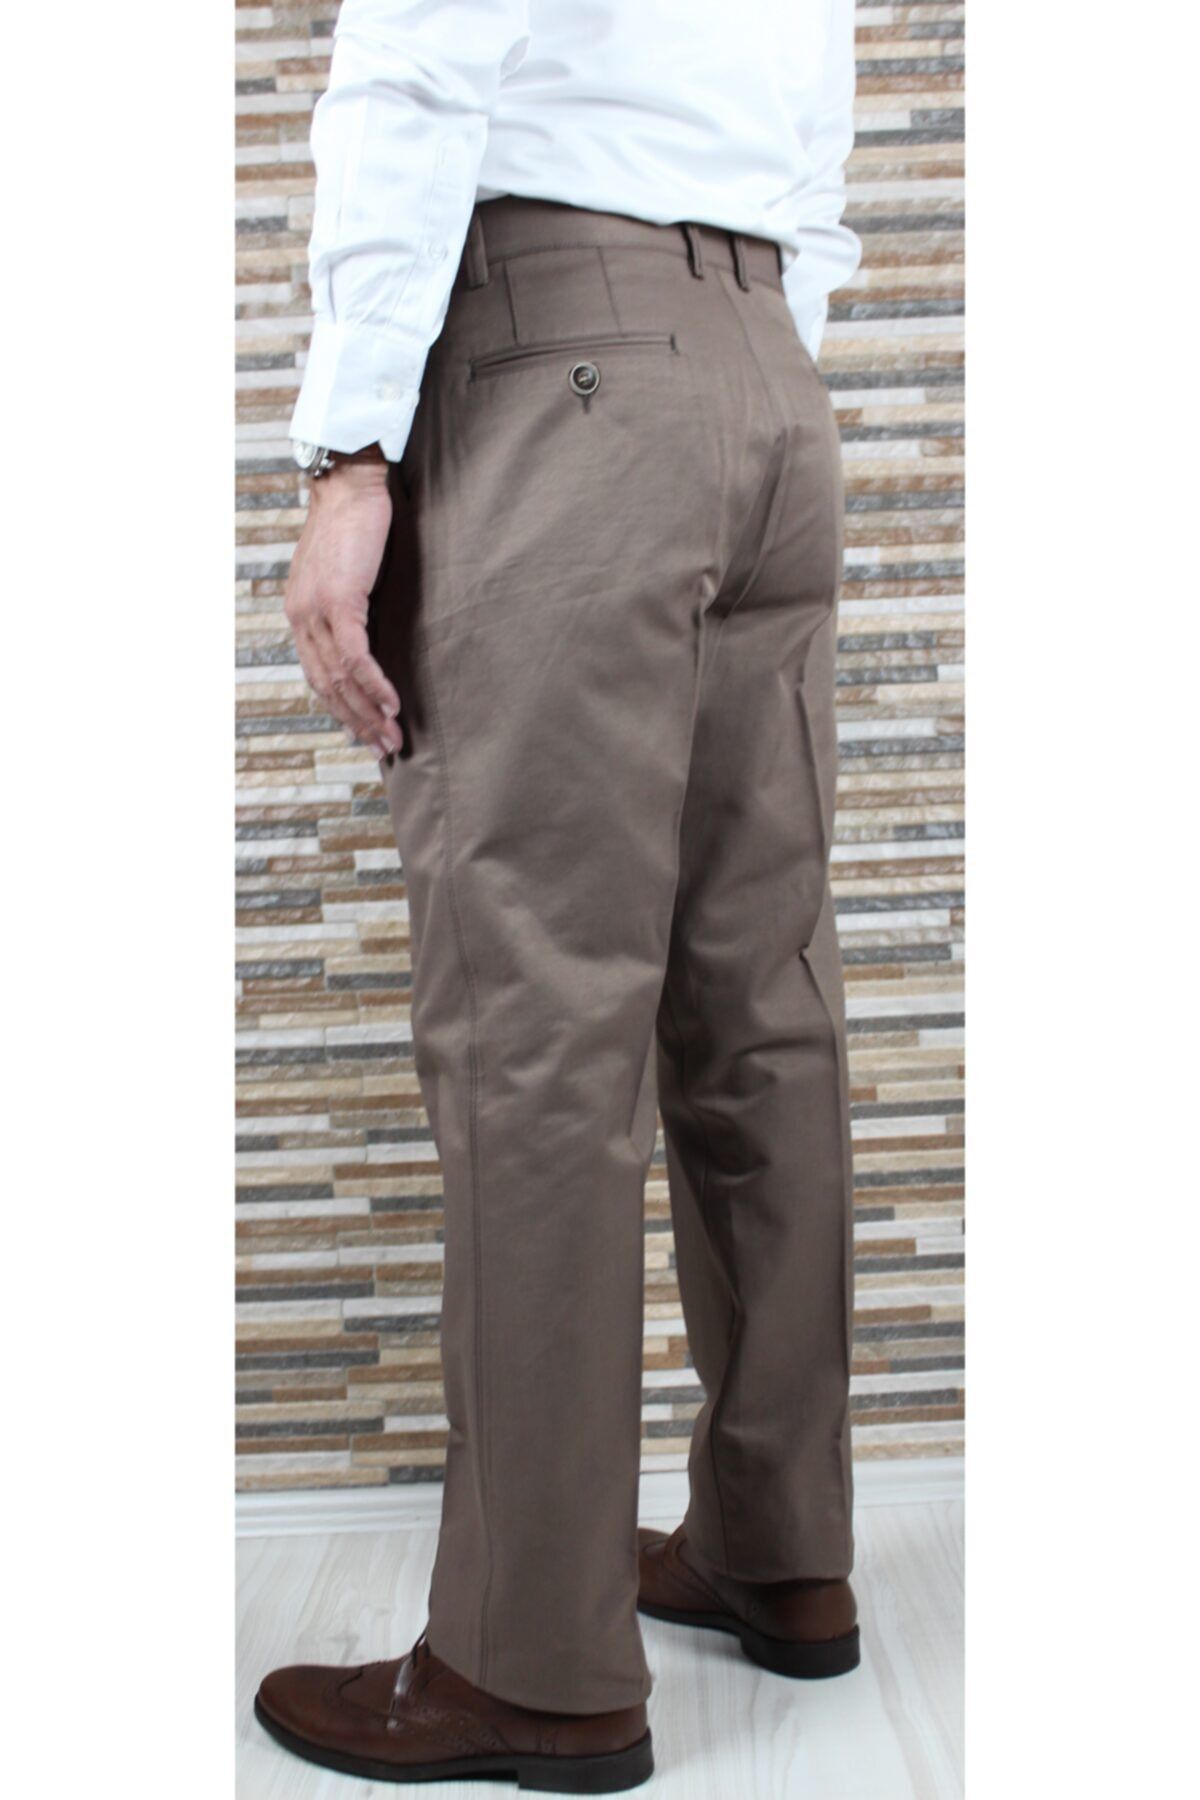 Light Brown Linen Shirt - Shandy Cinnamon | Linen Shirt for Woman